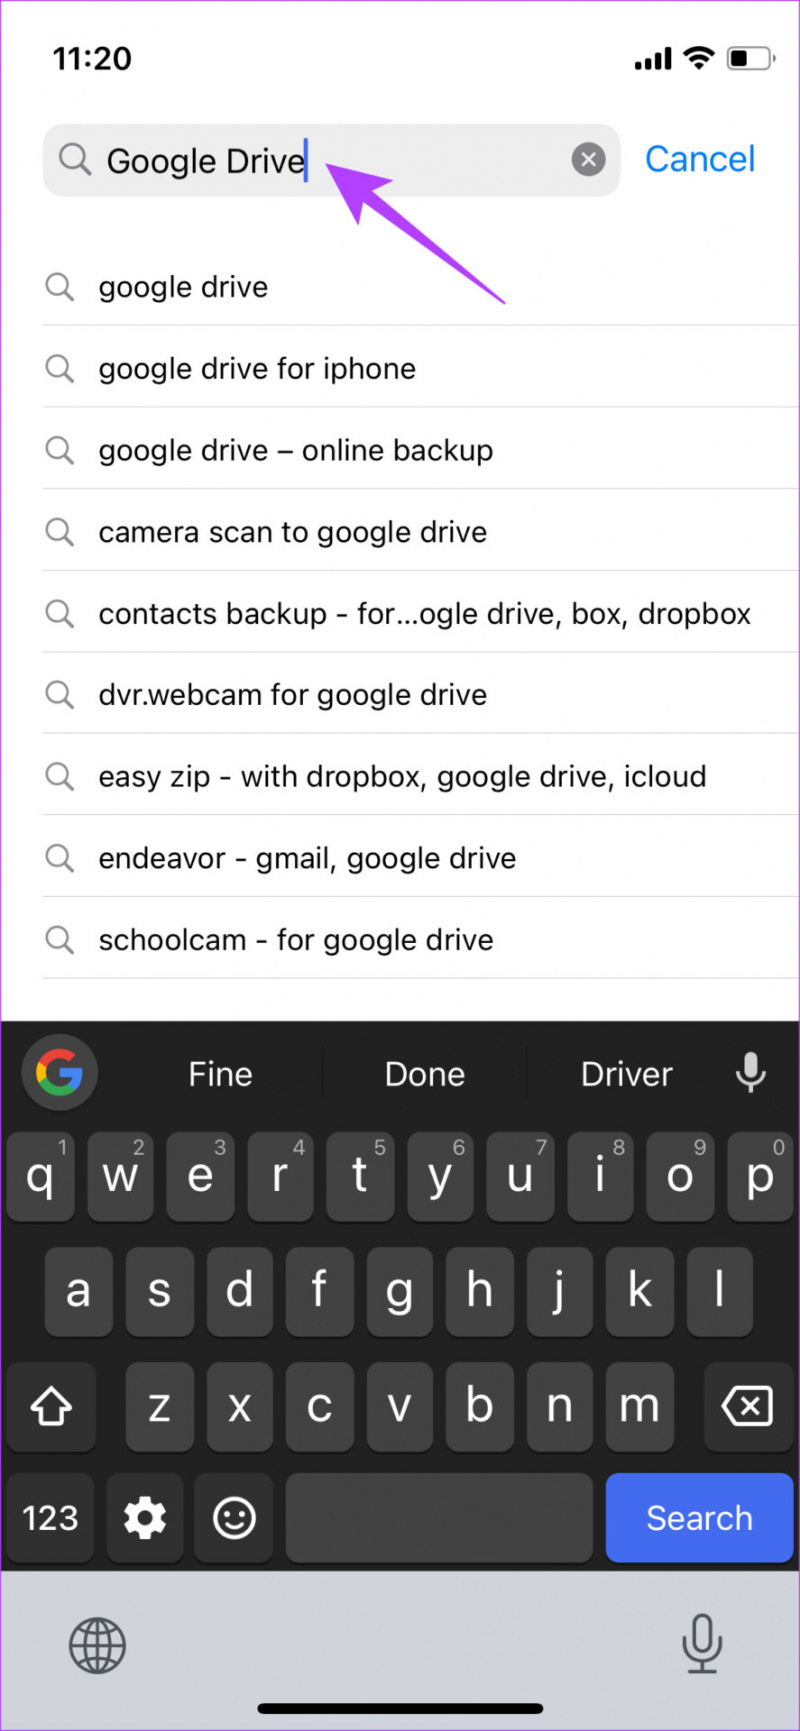   Søk etter Google Disk for å sikkerhetskopiere